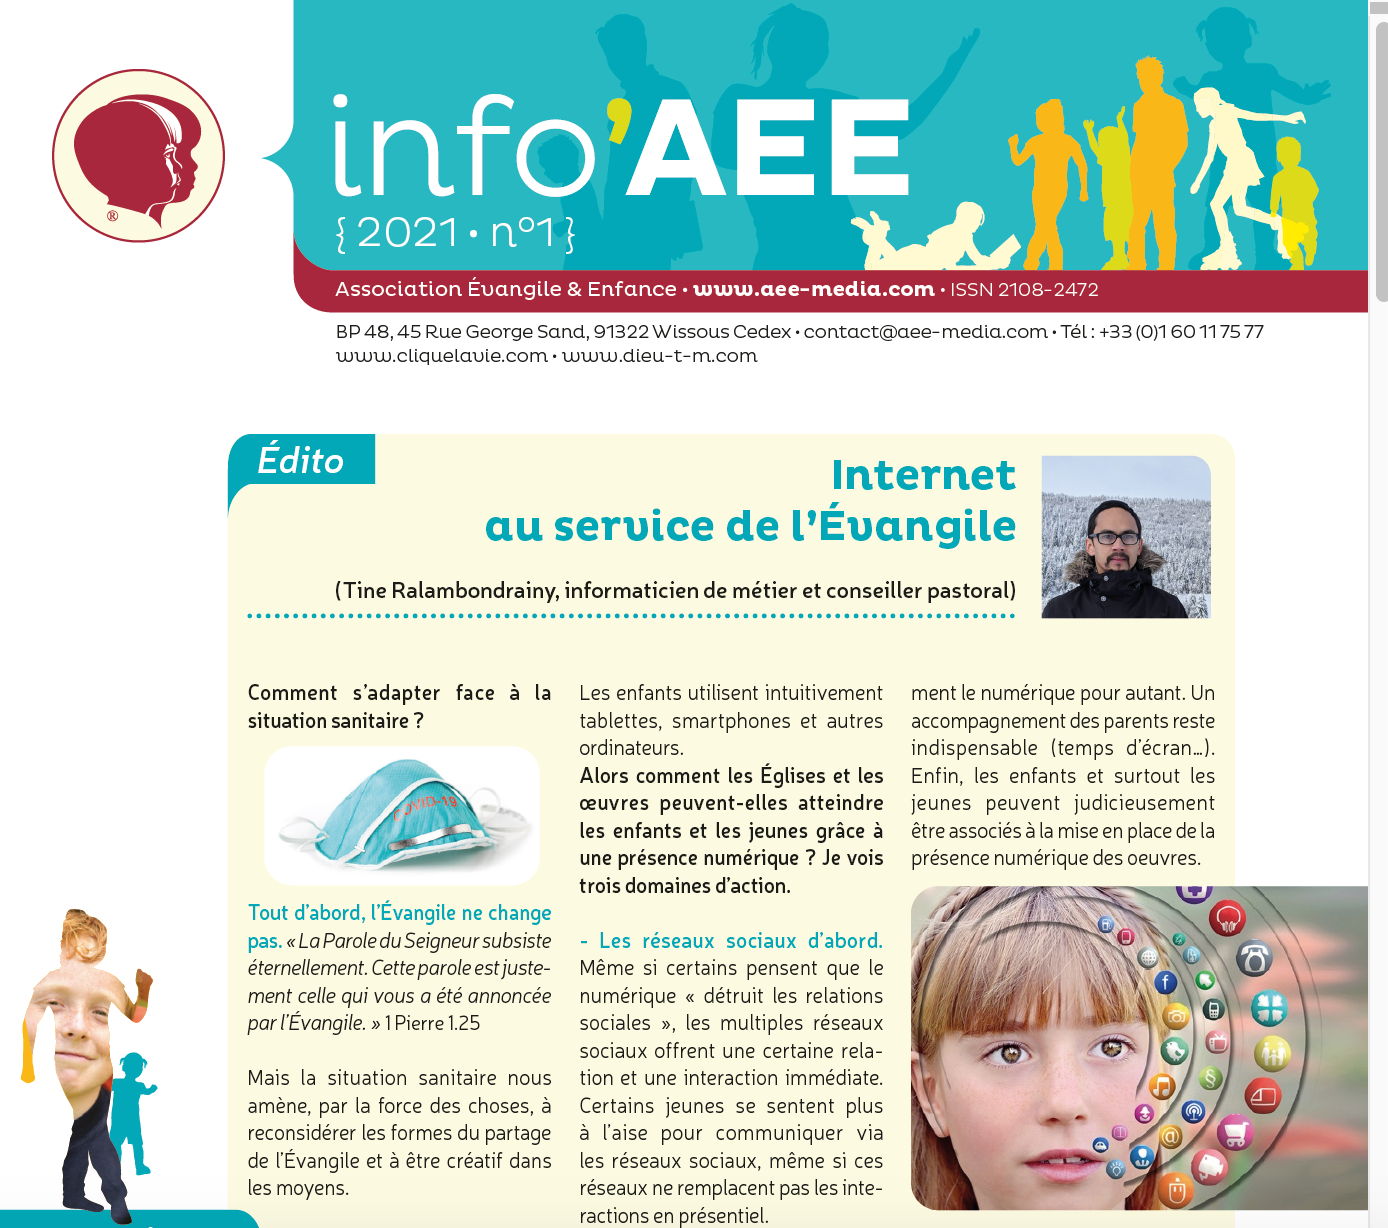 Info AEE 2021 n°1